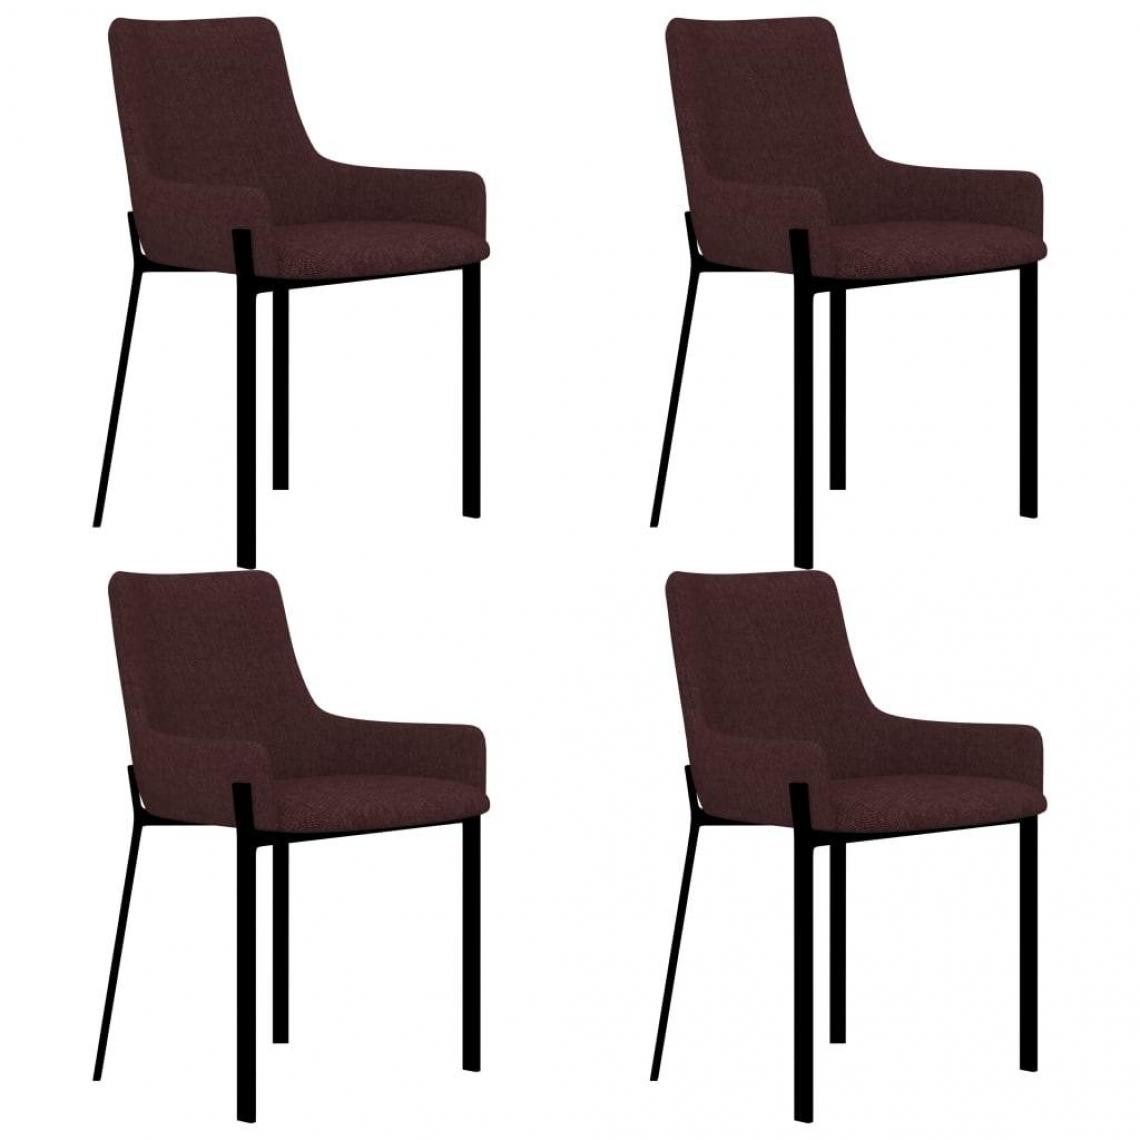 Decoshop26 - Lot de 4 chaises de salle à manger cuisine design moderne tissu bordeaux CDS021341 - Chaises